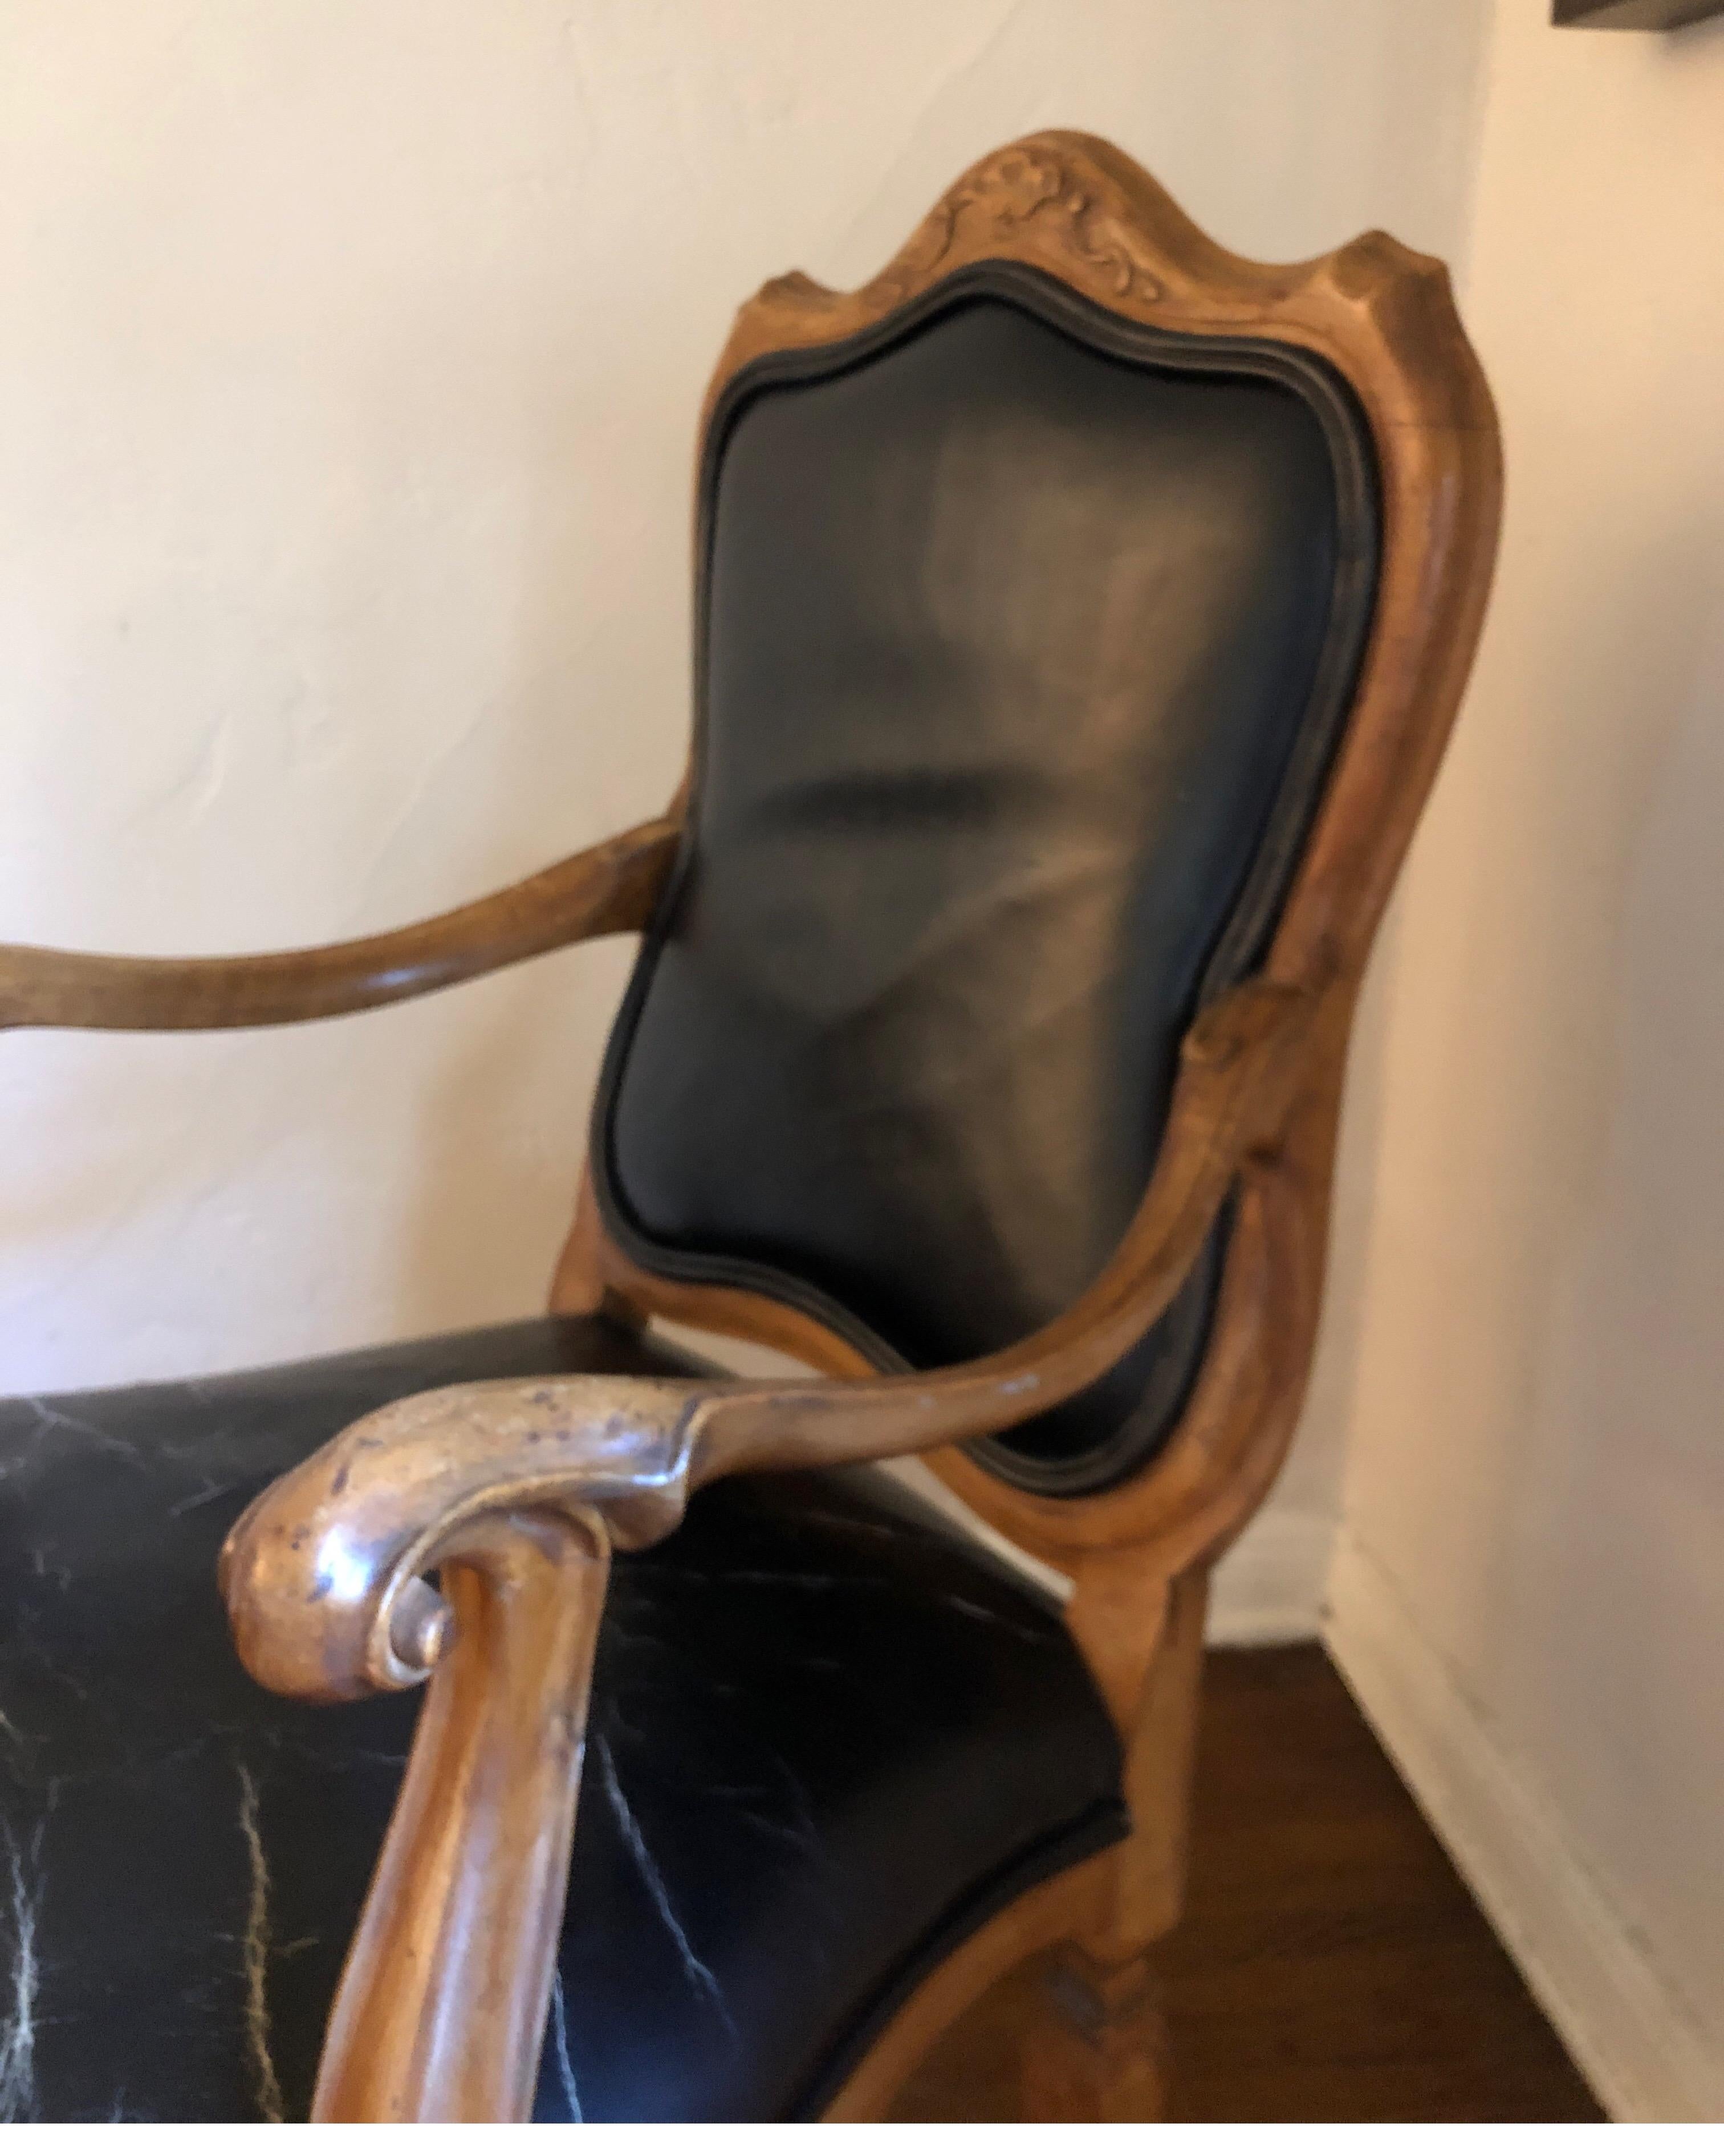 Außergewöhnlicher geschnitzter Stuhl im venezianischen Stil, hergestellt in Italien.
Perfekte Größe für einen Schreibtisch.
Geschnitzte Details entlang des Rückens und ein klobiger, geschwungener Griff an der Handstütze.
Die schwarze